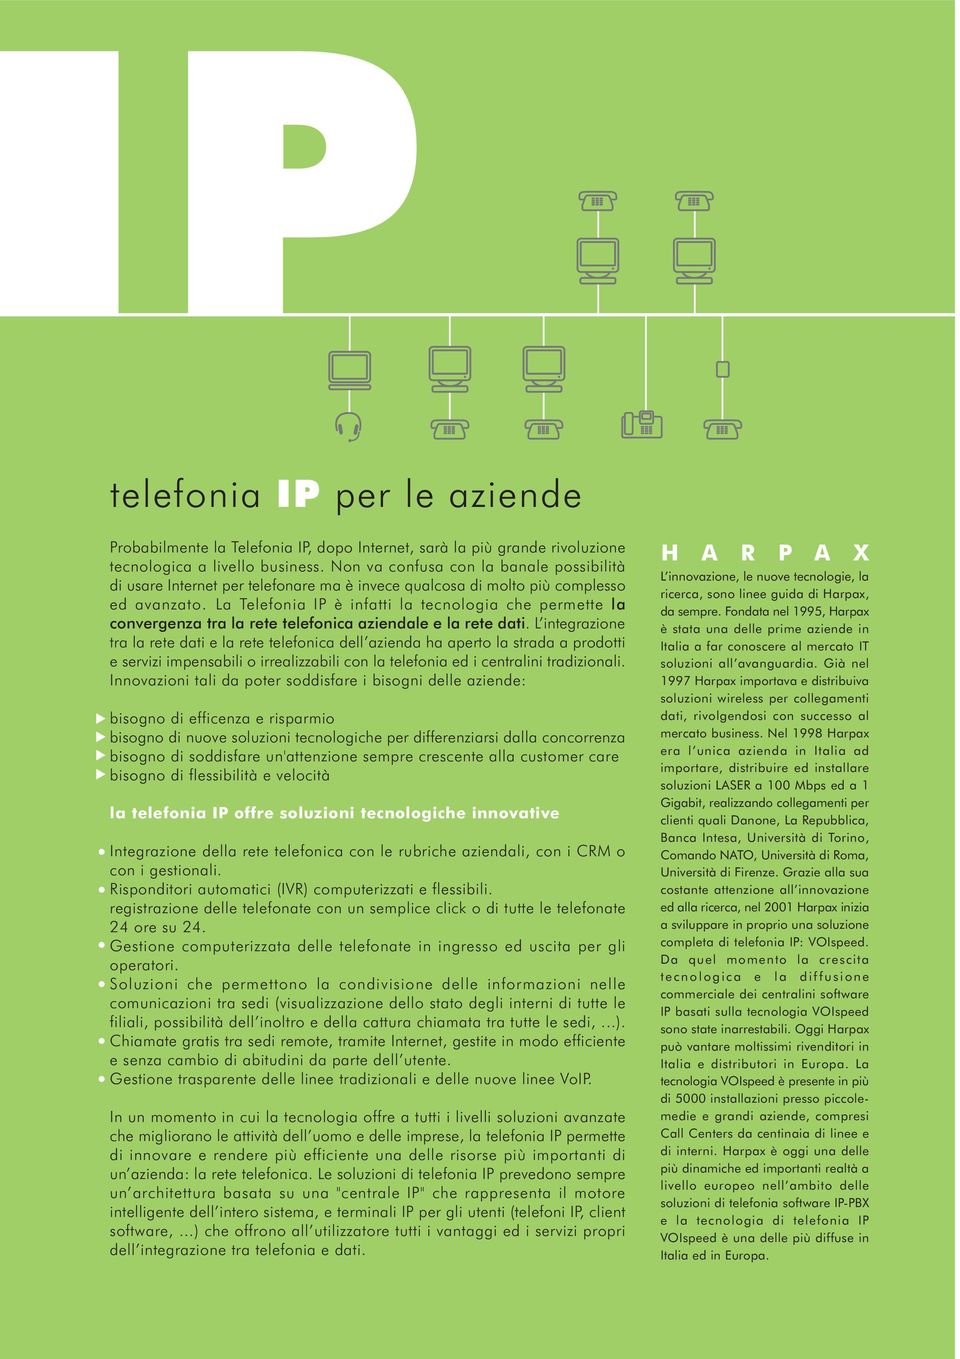 La Telefonia IP è infatti la tecnologia che permette la convergenza tra la rete telefonica aziendale e la rete dati.